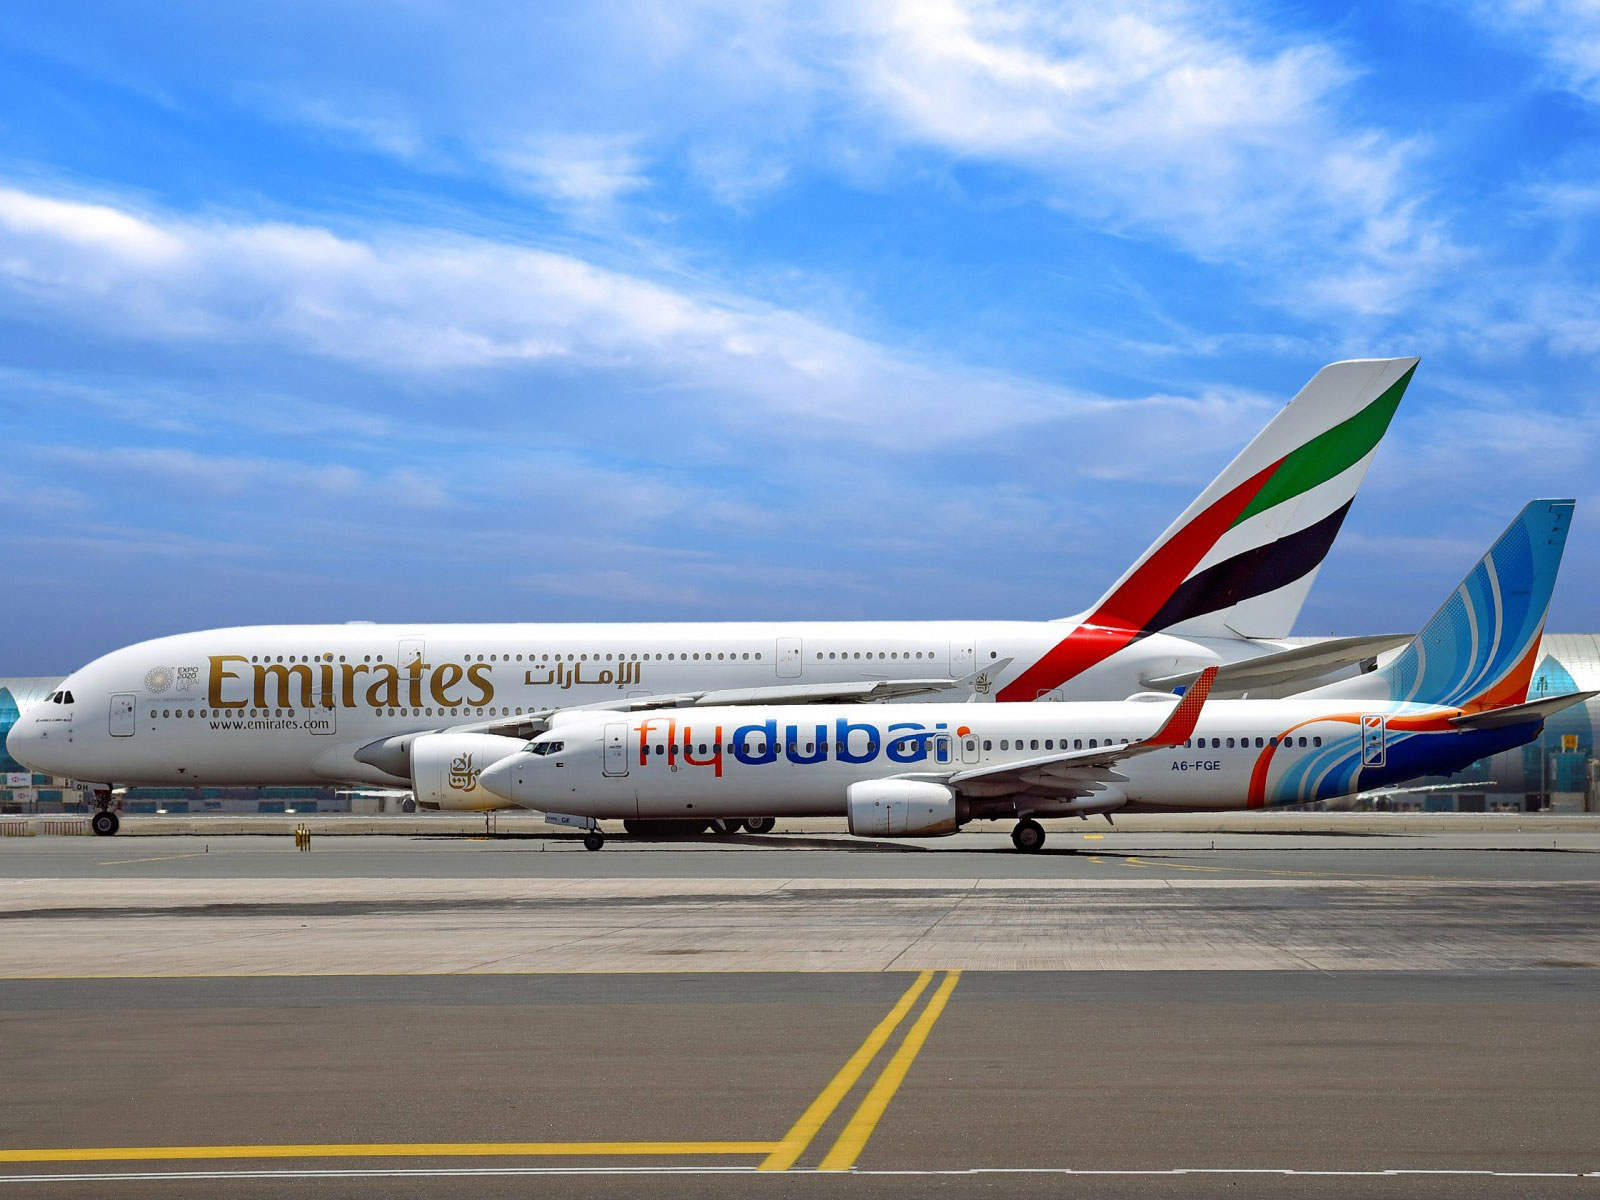 Emirates : Australie, Christchurch et 1 millions de miles 61 Air Journal